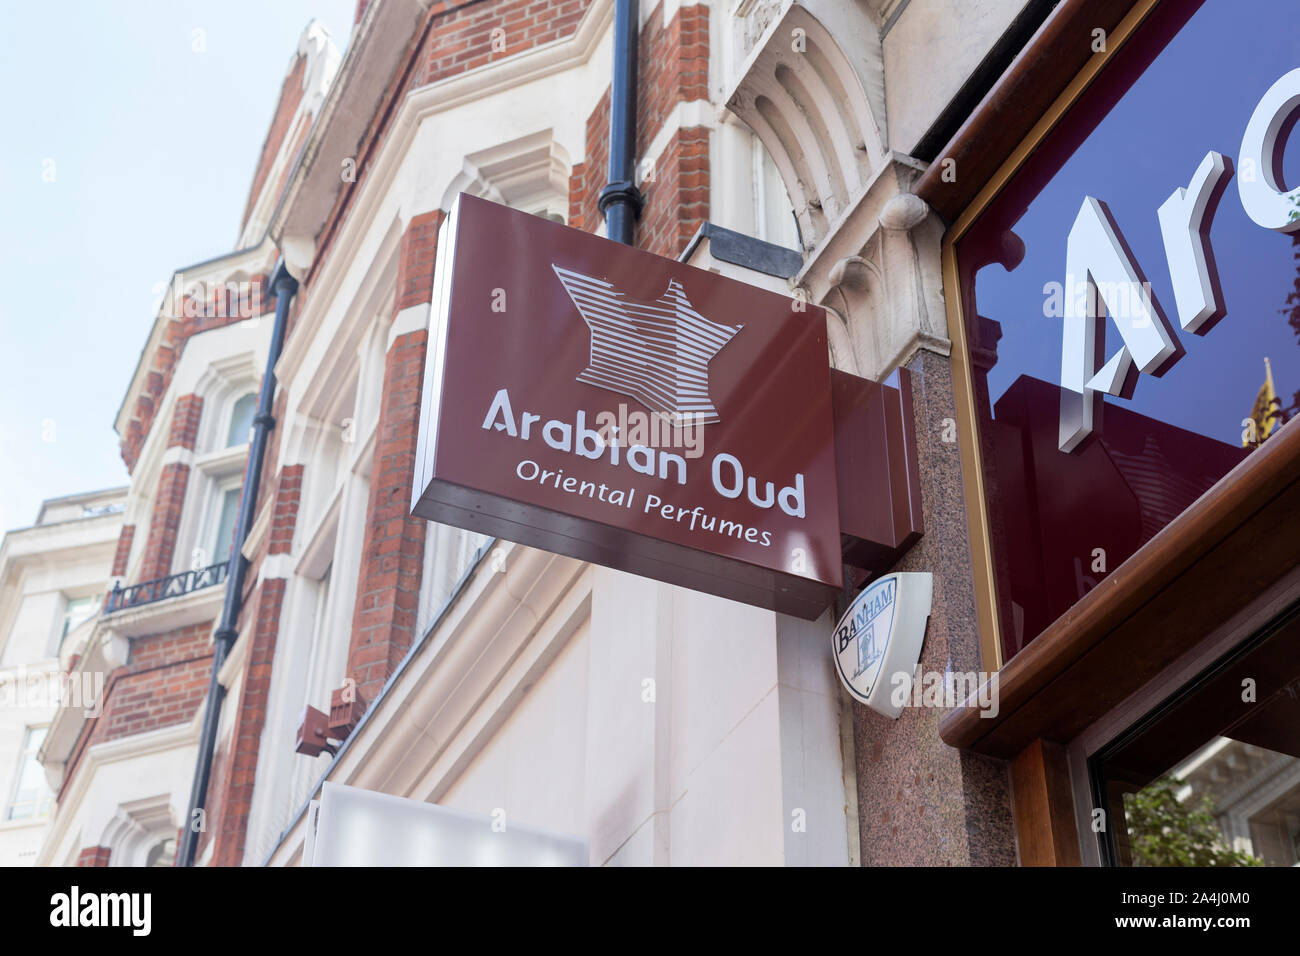 Arabian Oud segno logo, Londra, Inghilterra Foto Stock